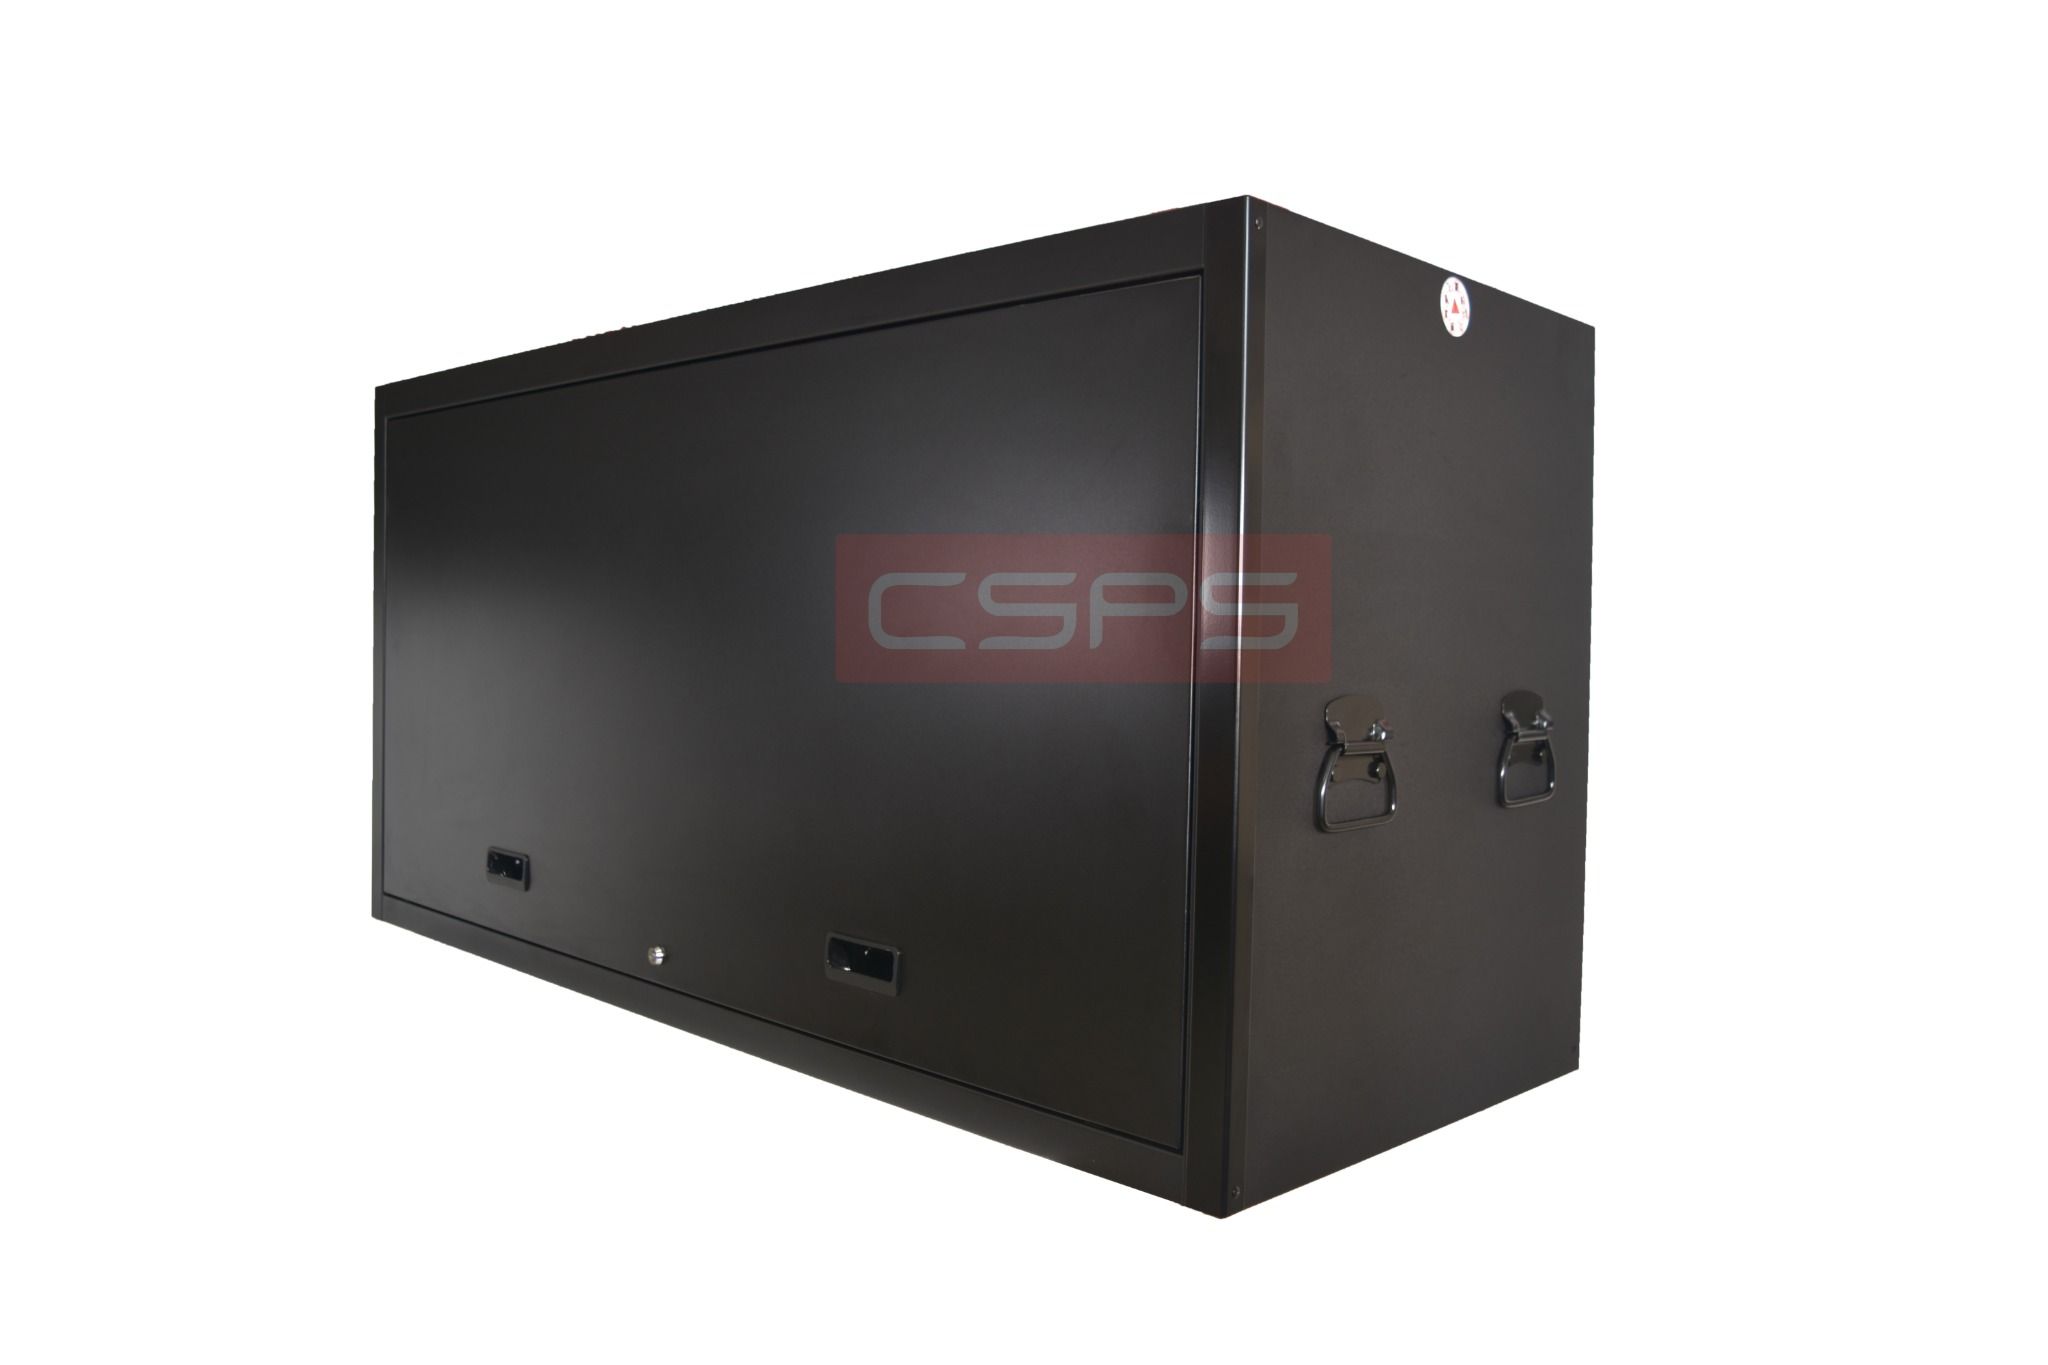  Tủ dụng cụ CSPS 155cm - 01 cửa màu đen 